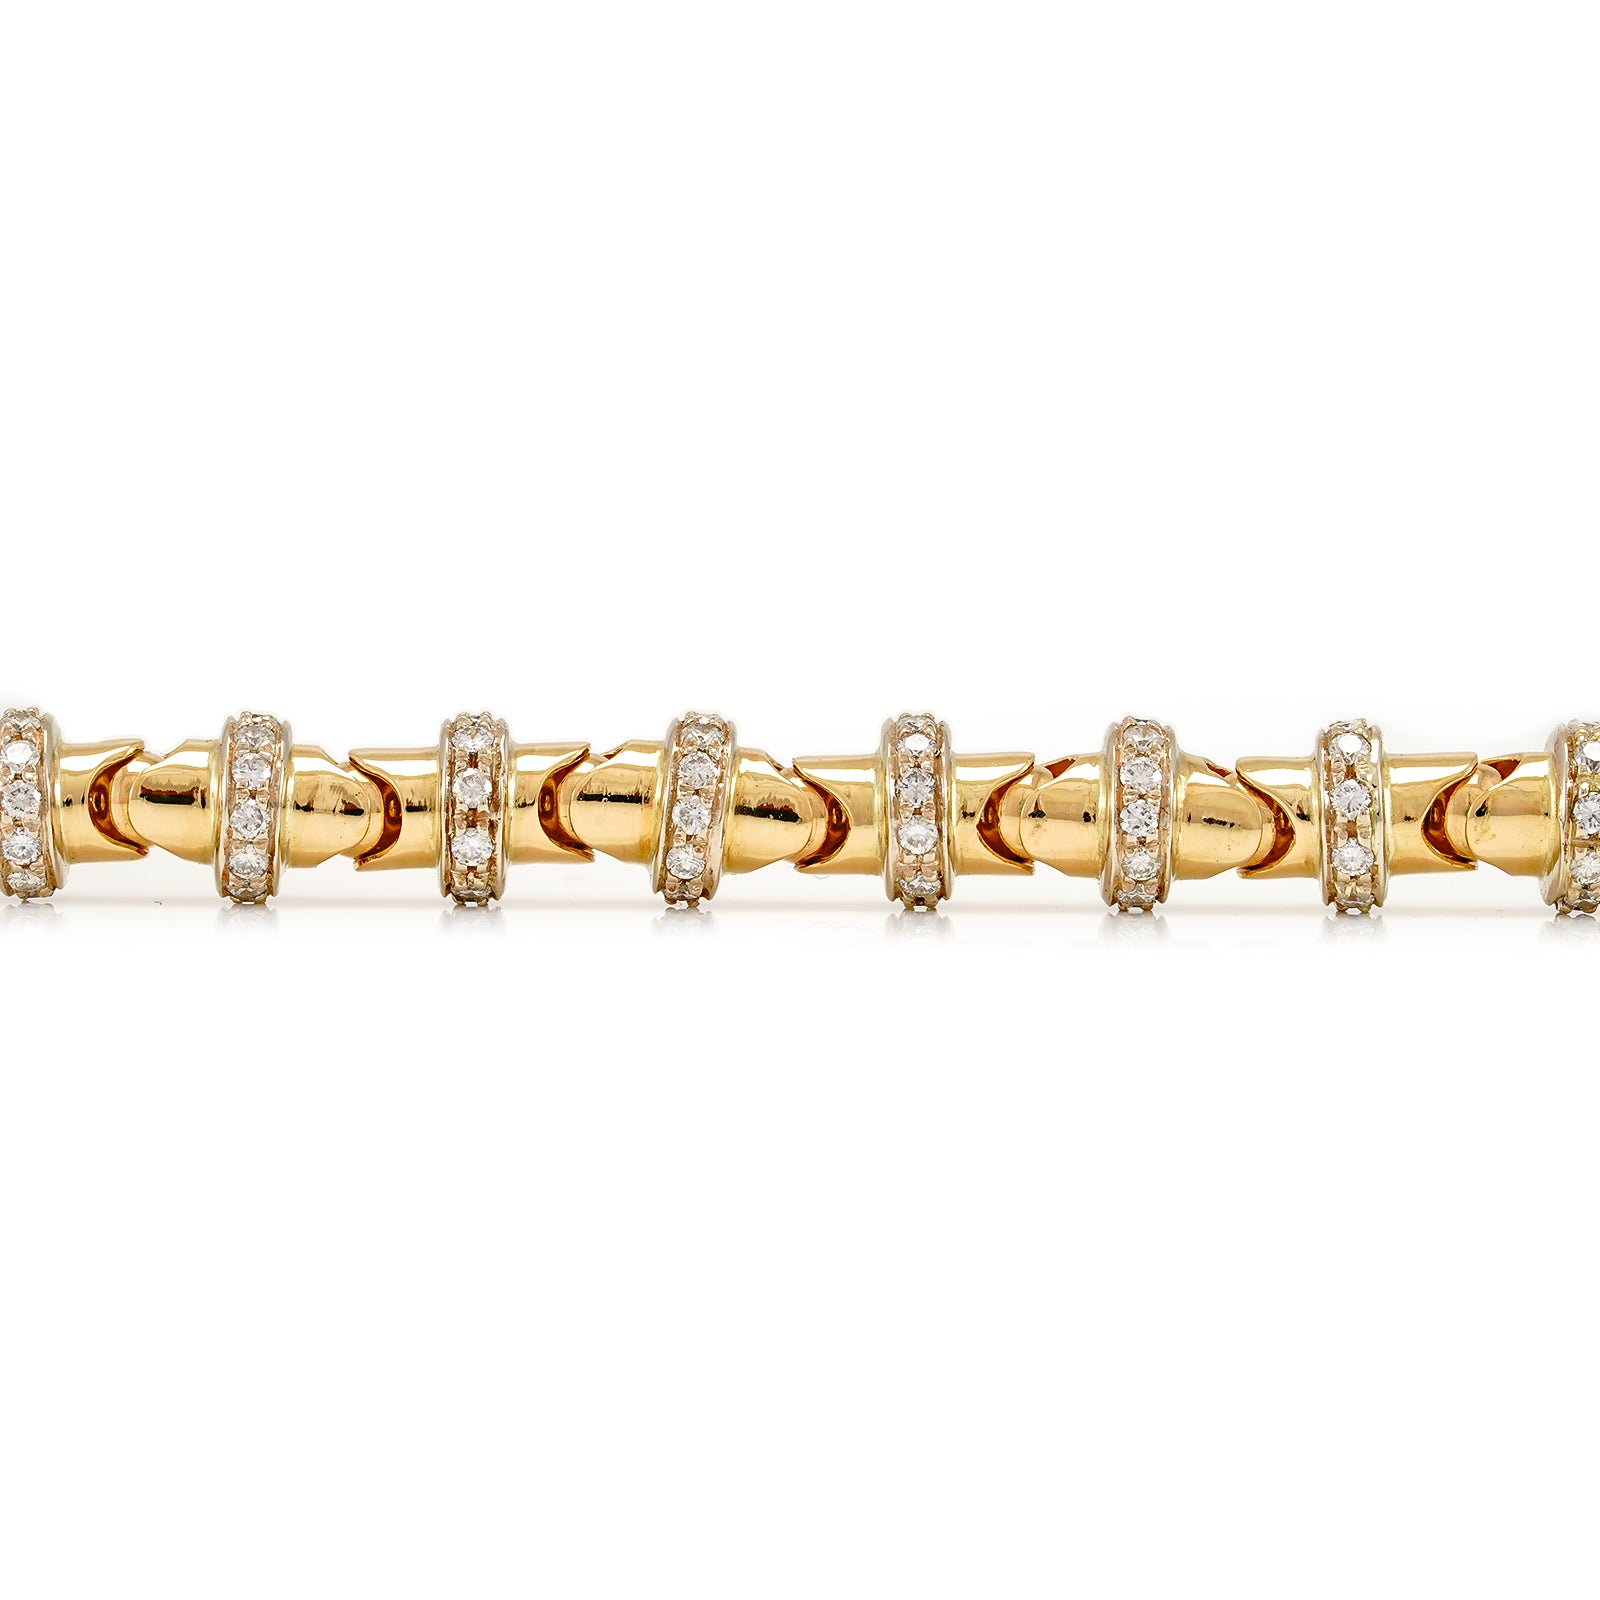 außergewöhnliches Massives Armband mit 266 Diamanten in Gold